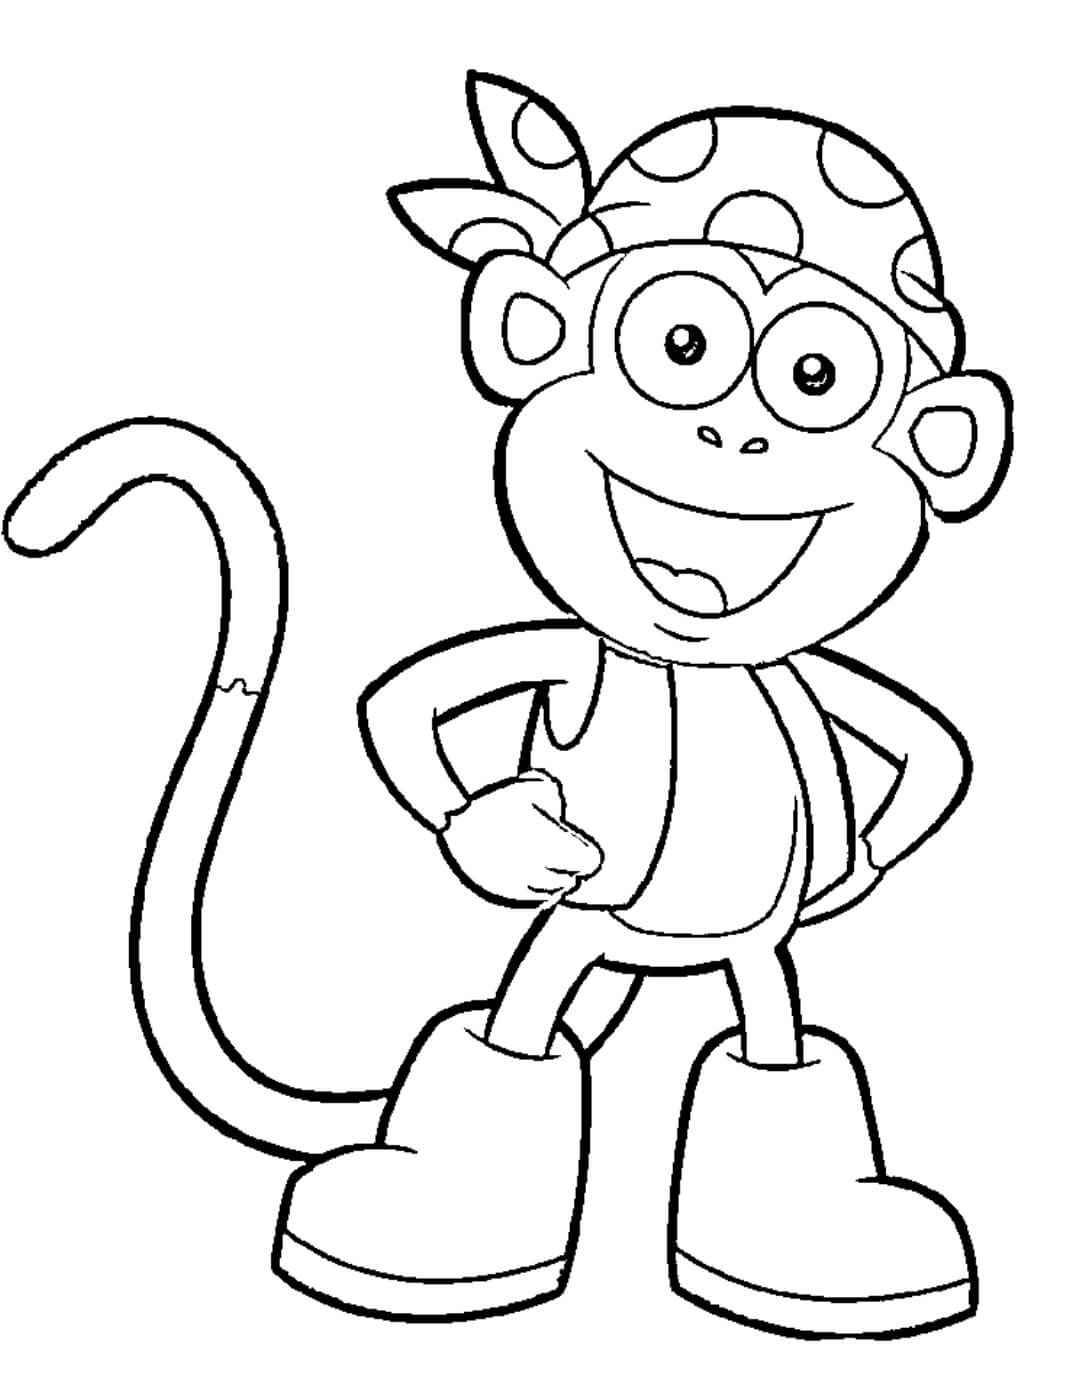 Macaco Personagem de Desenho Animado Divertido para colorir